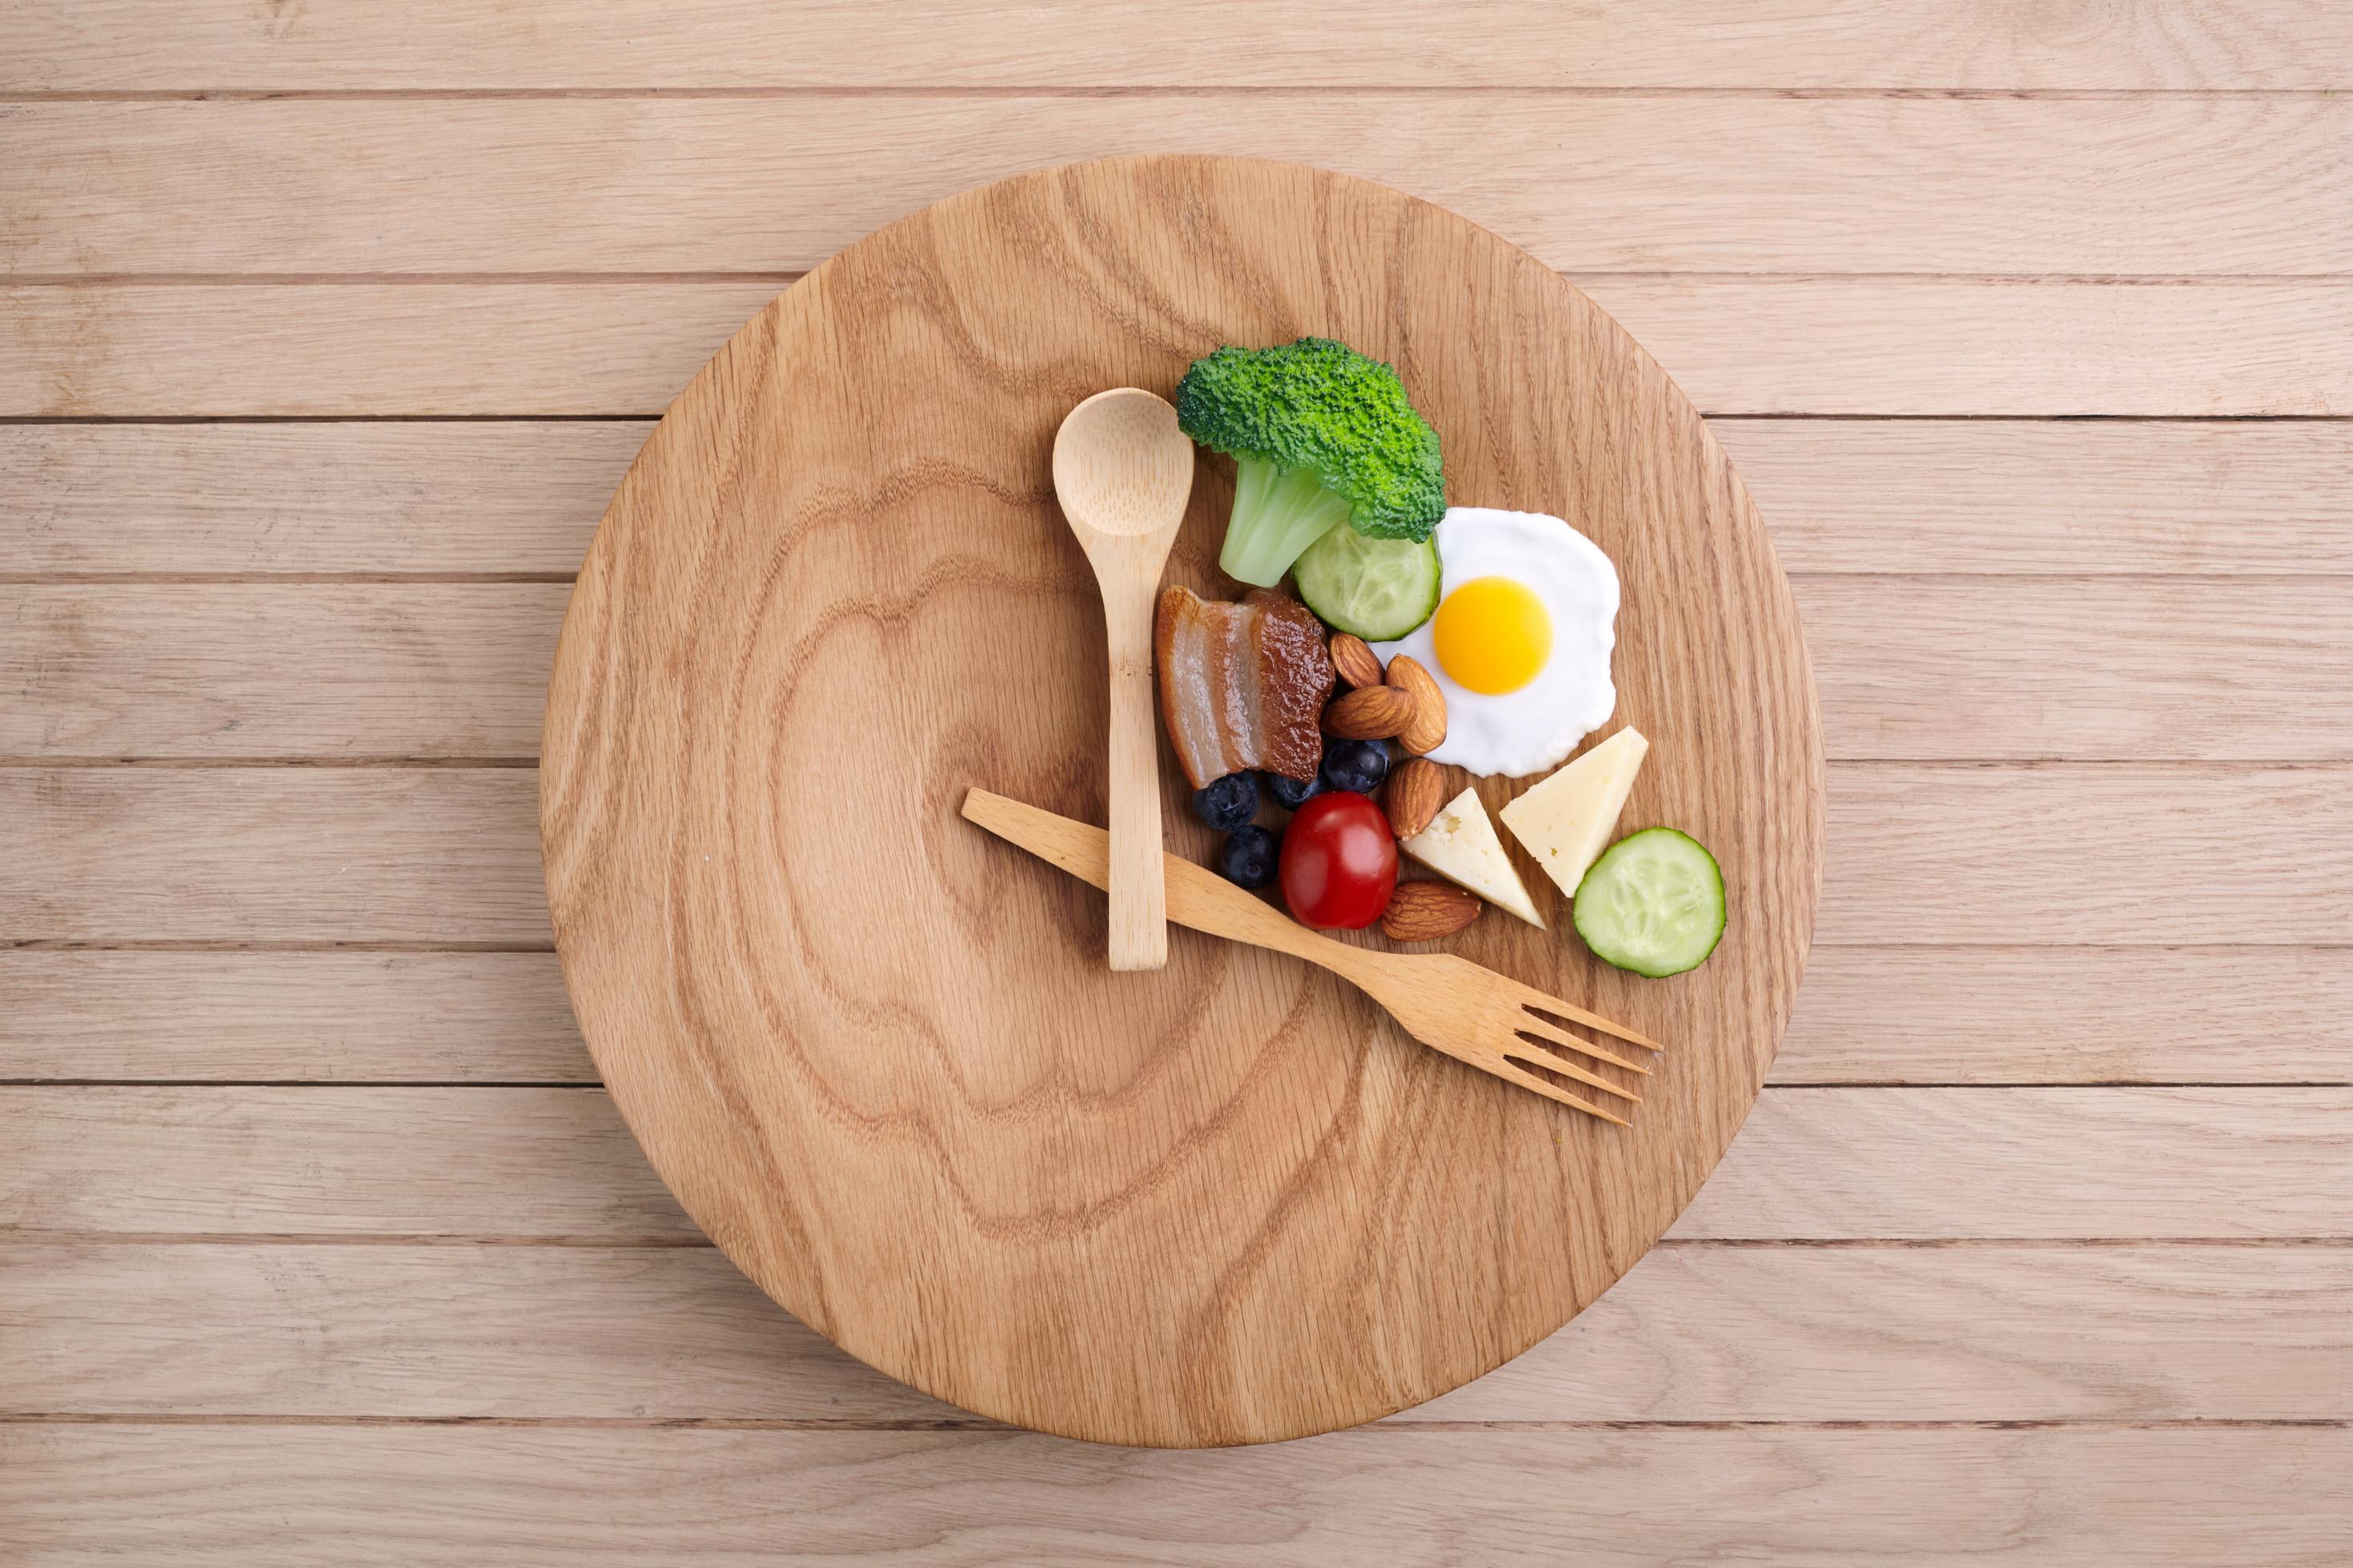 Auf einem runden Holzteller sind Löffel und Gabel wie die Zeiger einer Uhr angeordnet. Oben rechts liegen verschiedene Lebensmittel.